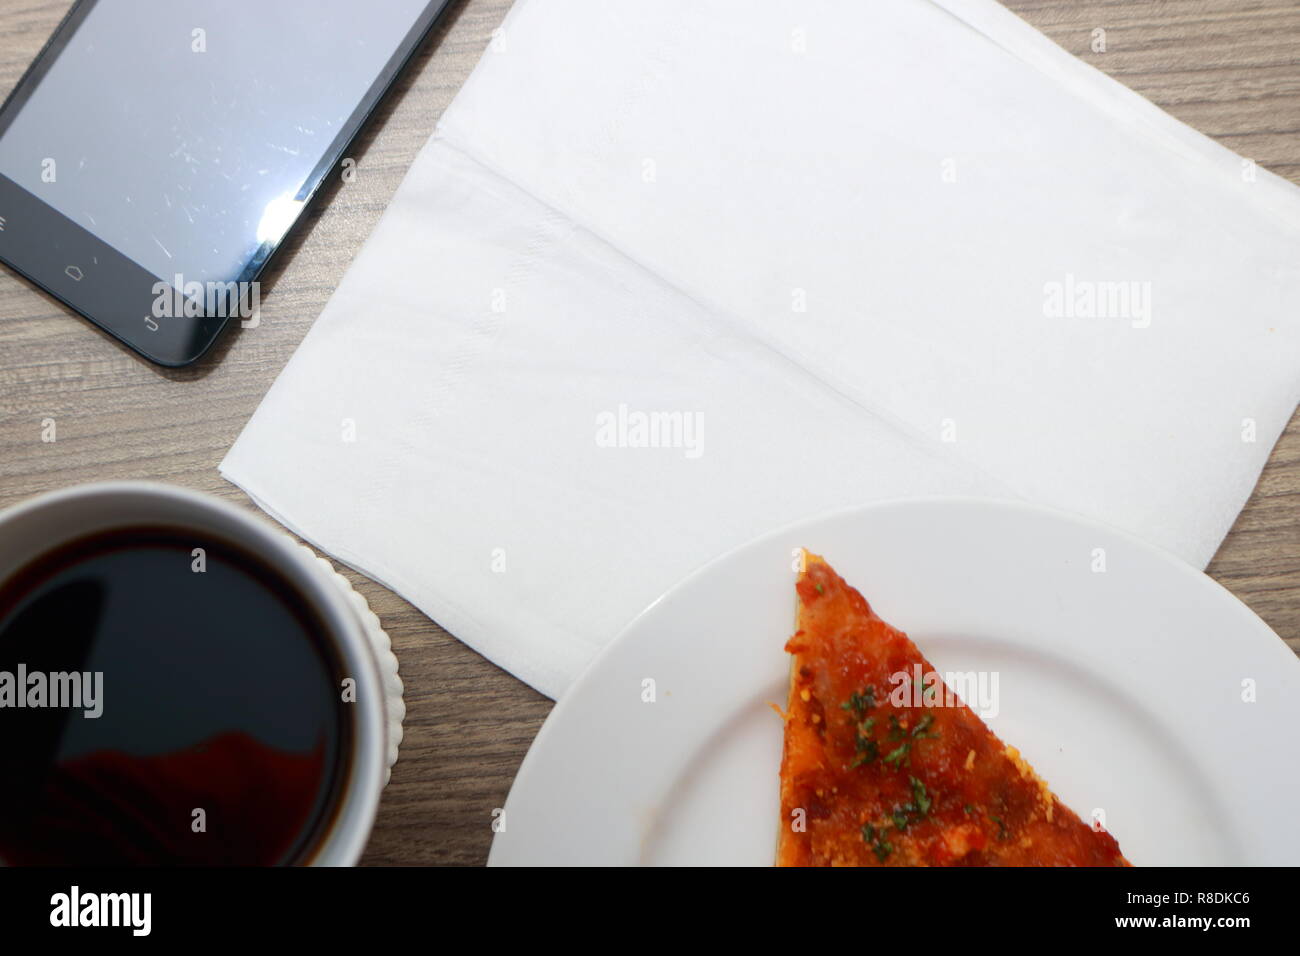 Vista superiore della scrivania, vuoto modello di carta, una tazza di caffè, la pizza e il telefono cellulare Foto Stock